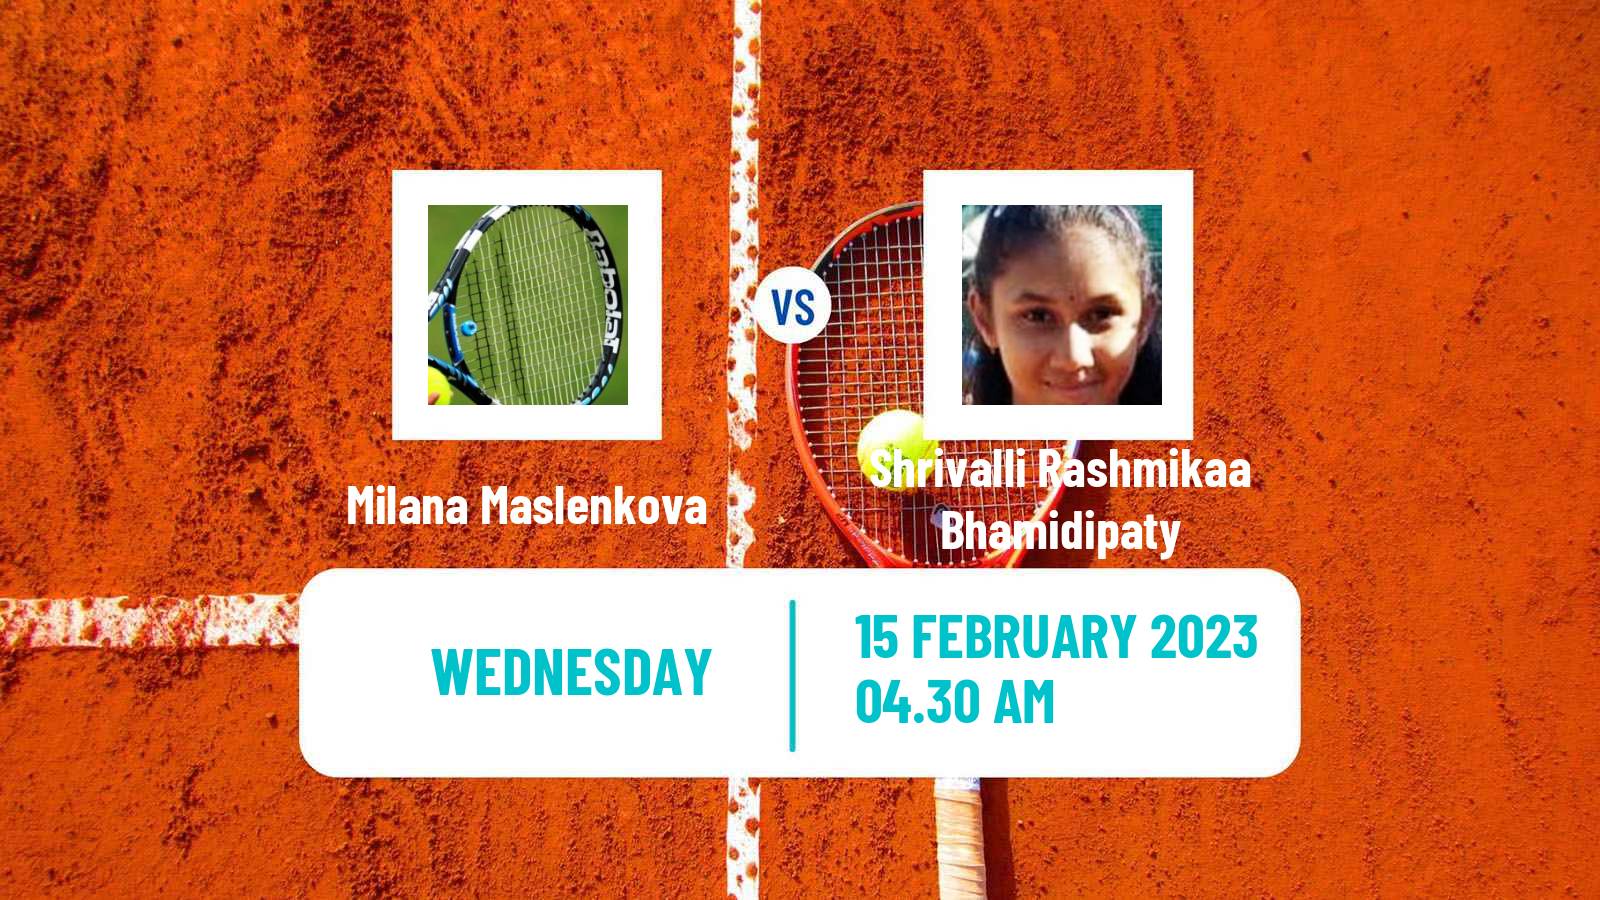 Tennis ITF Tournaments Milana Maslenkova - Shrivalli Rashmikaa Bhamidipaty